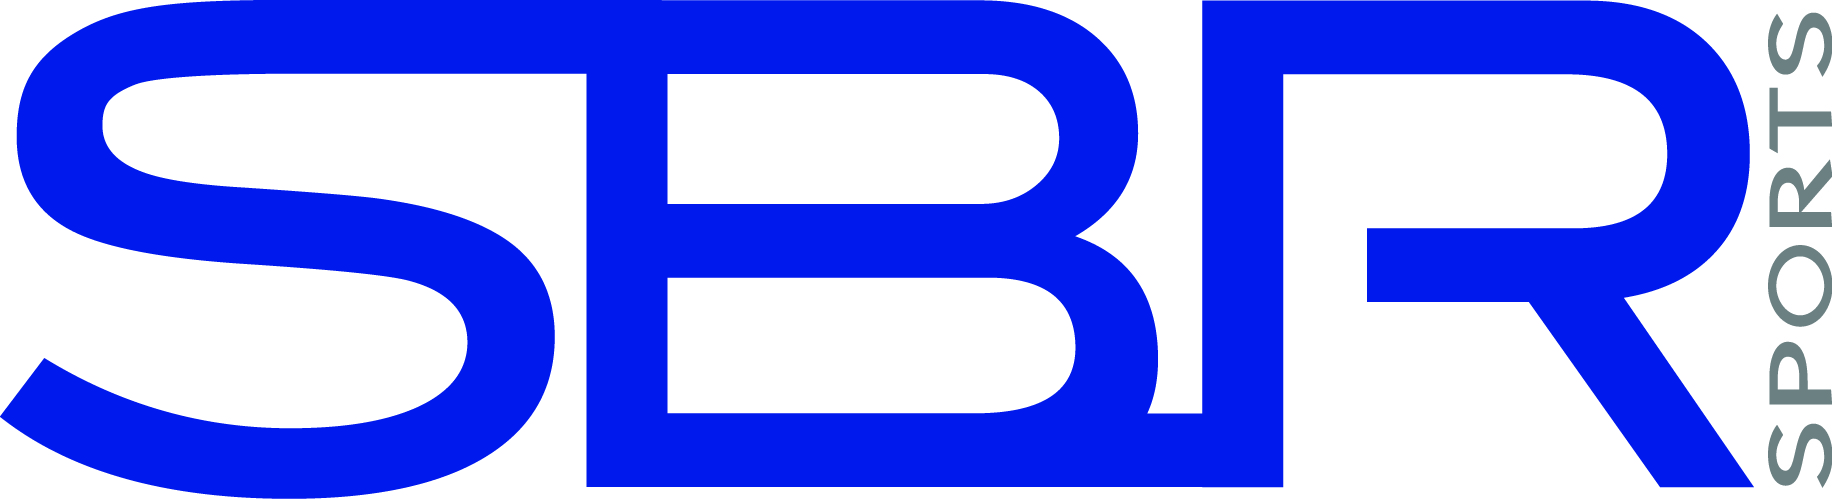 SBR logo blue